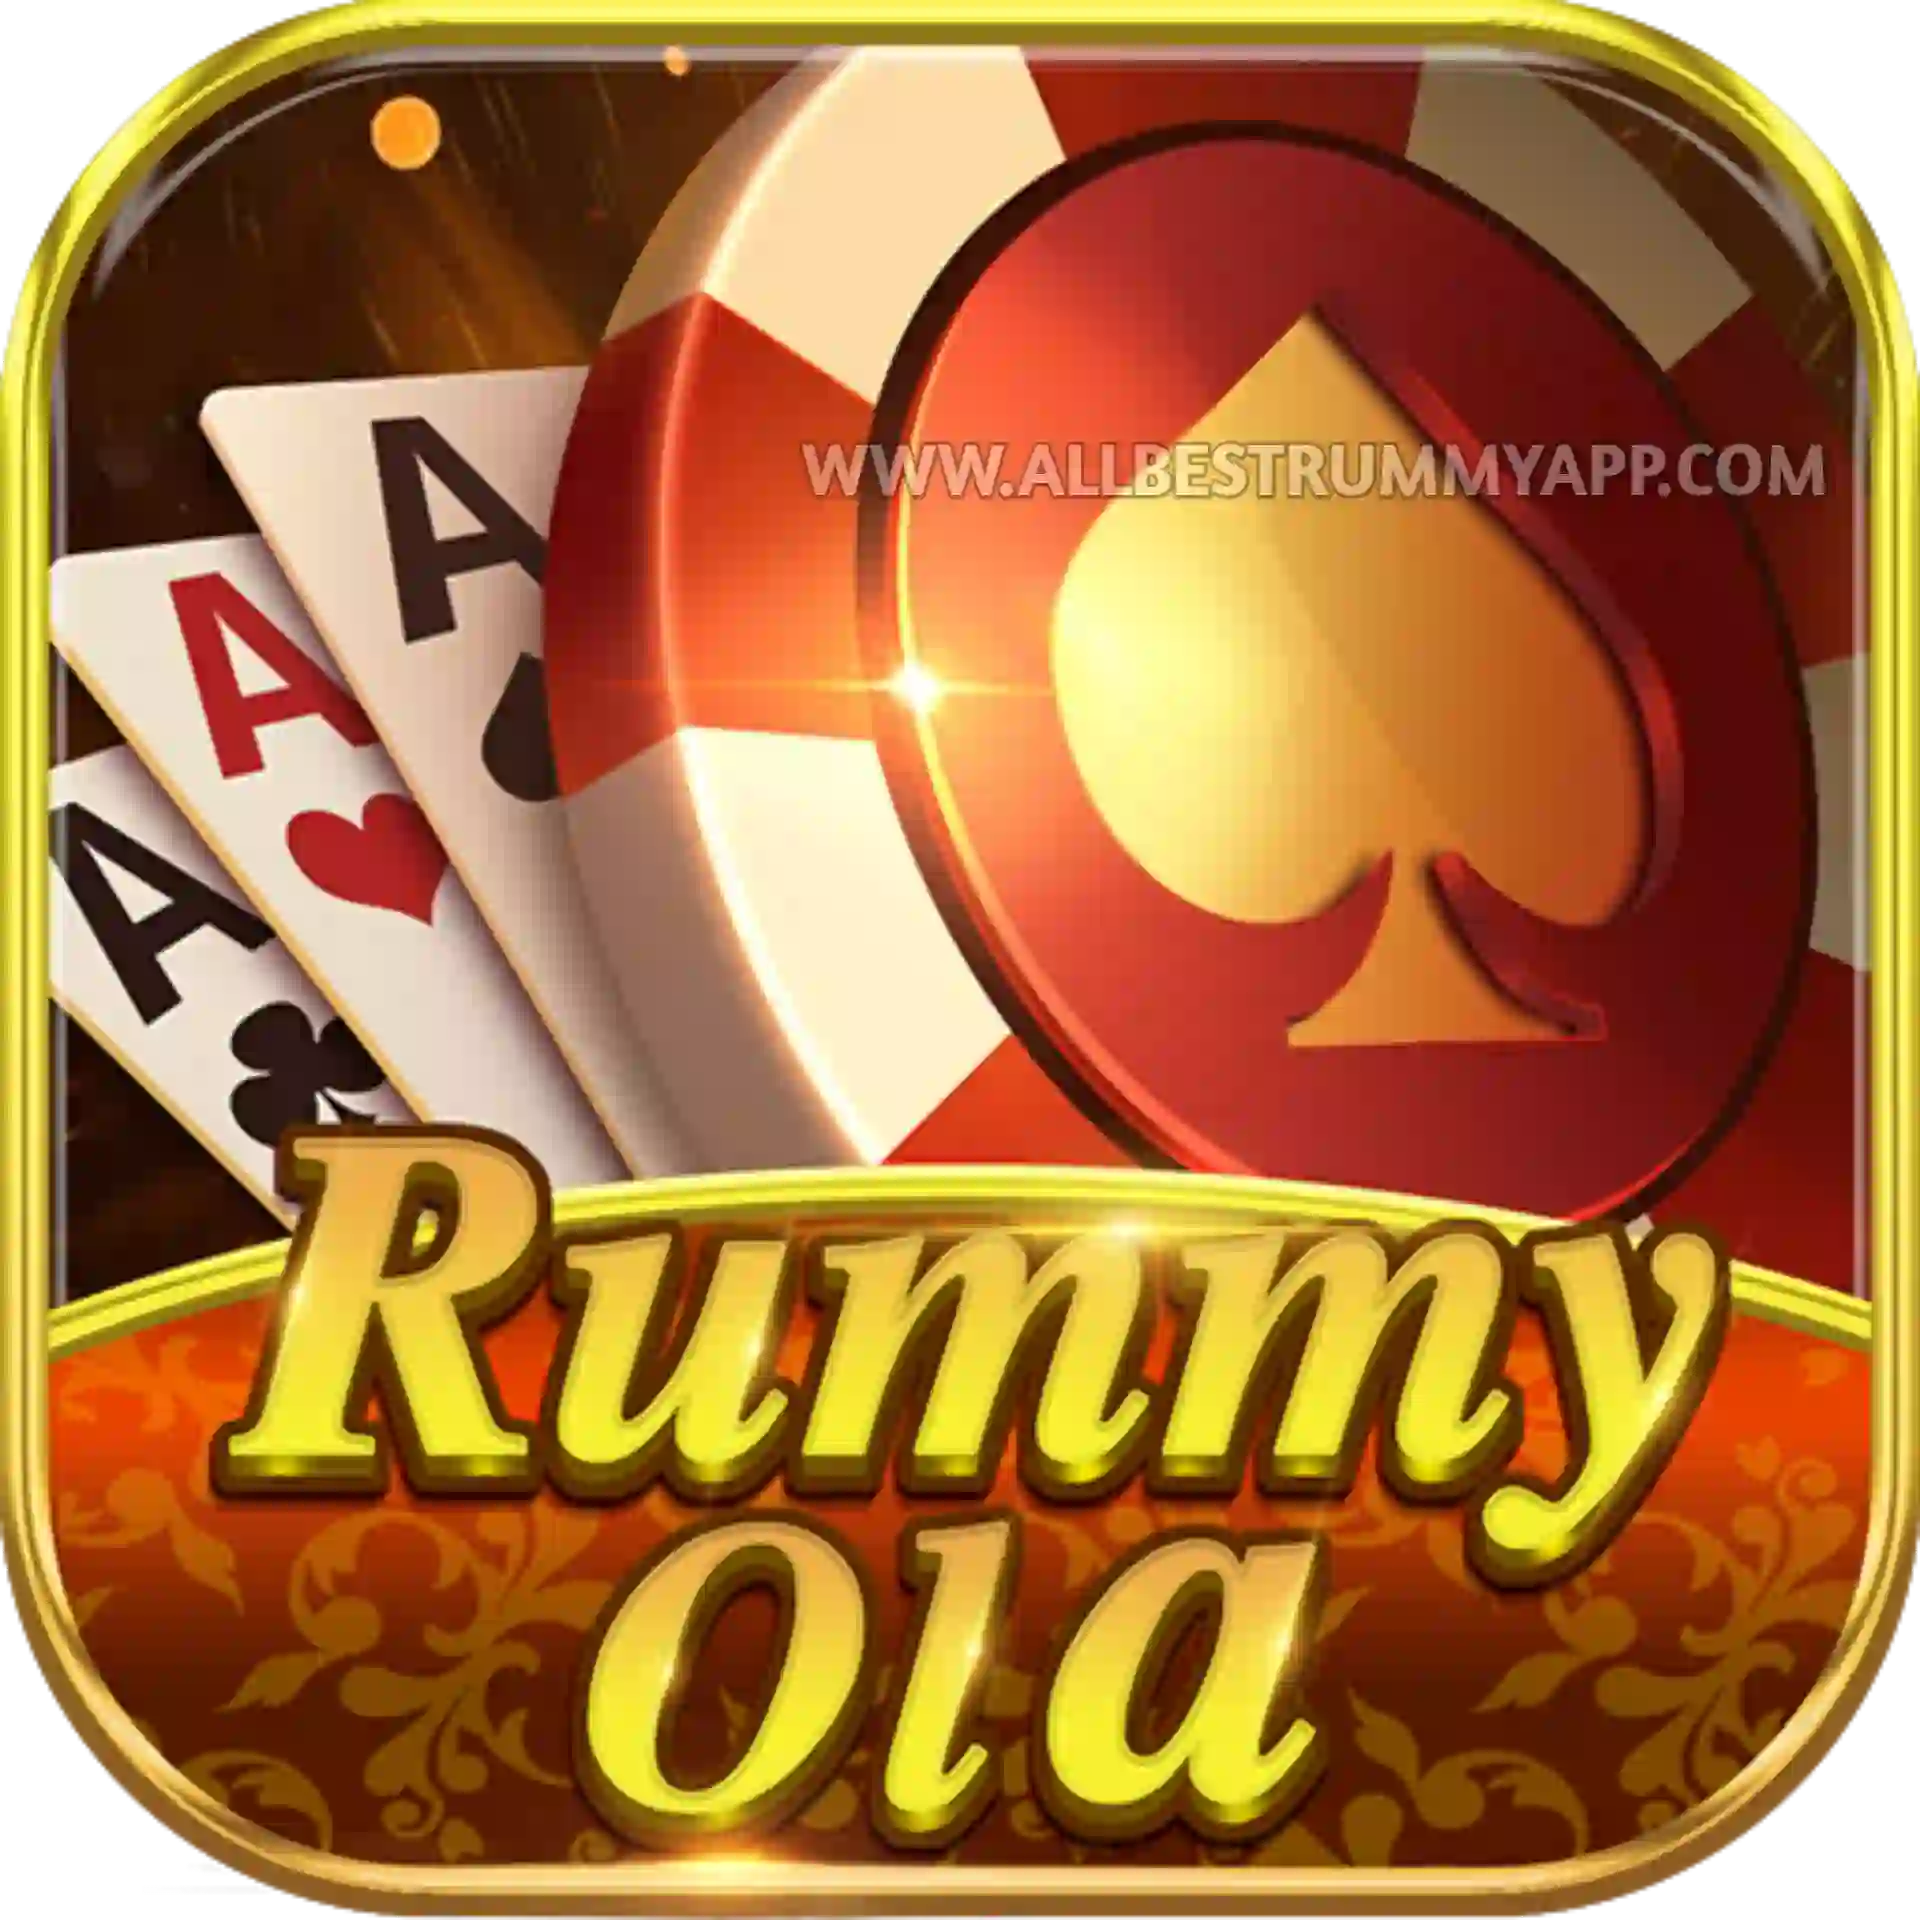 Rummy Ola Logo - All Best Rummy App